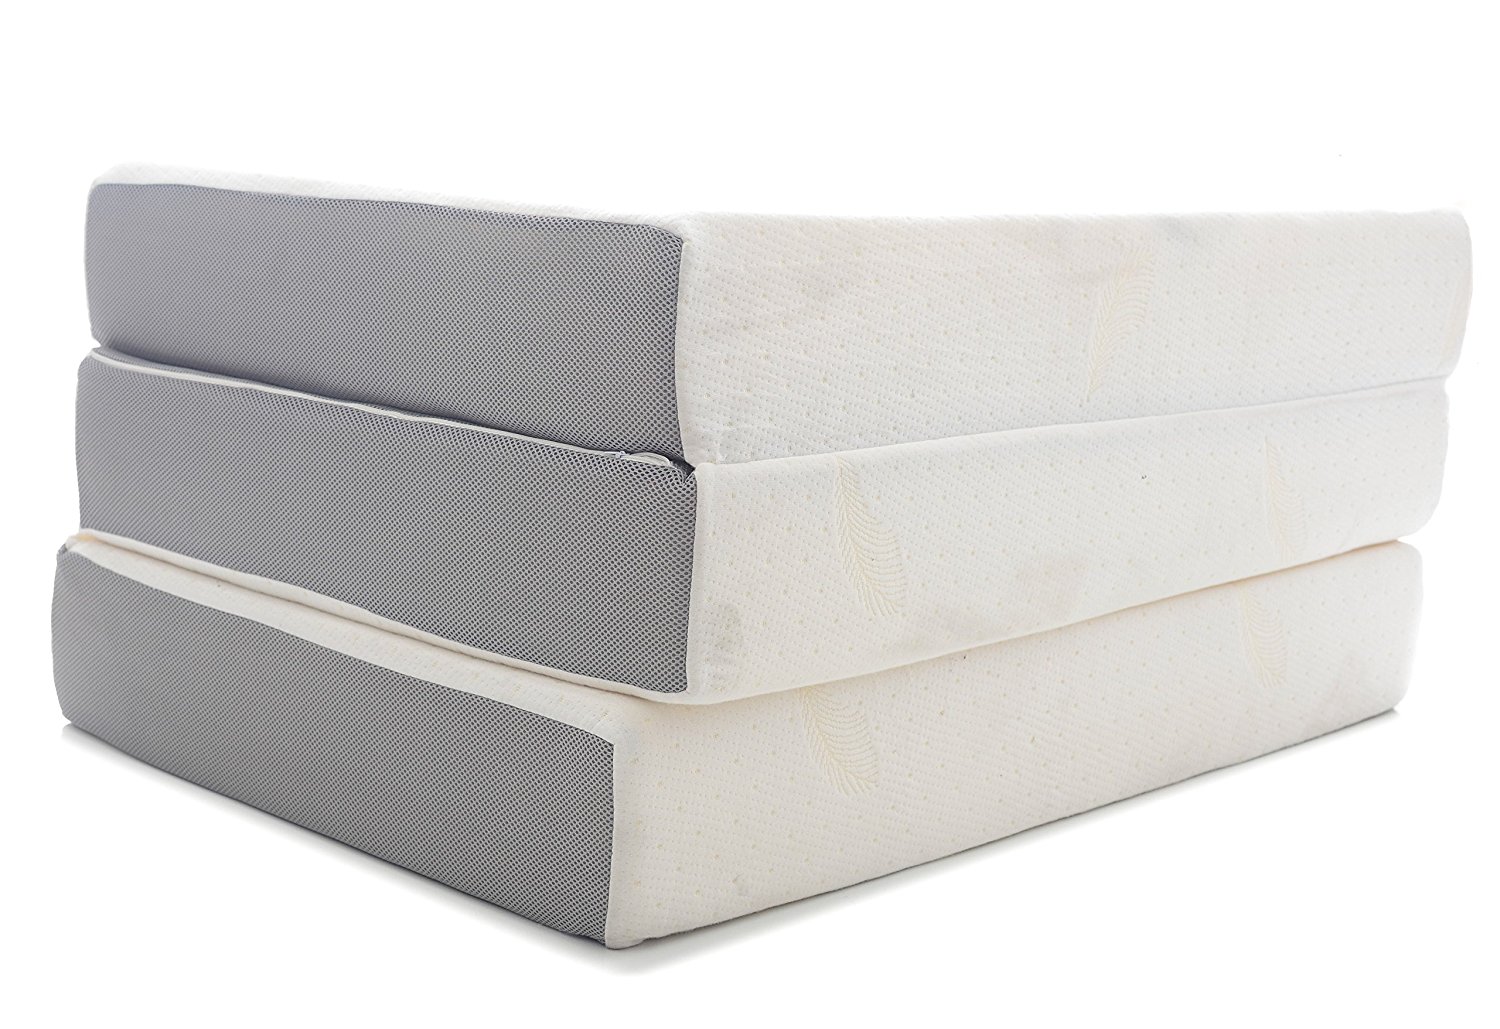 6 inch full size polyurethane foam mattress